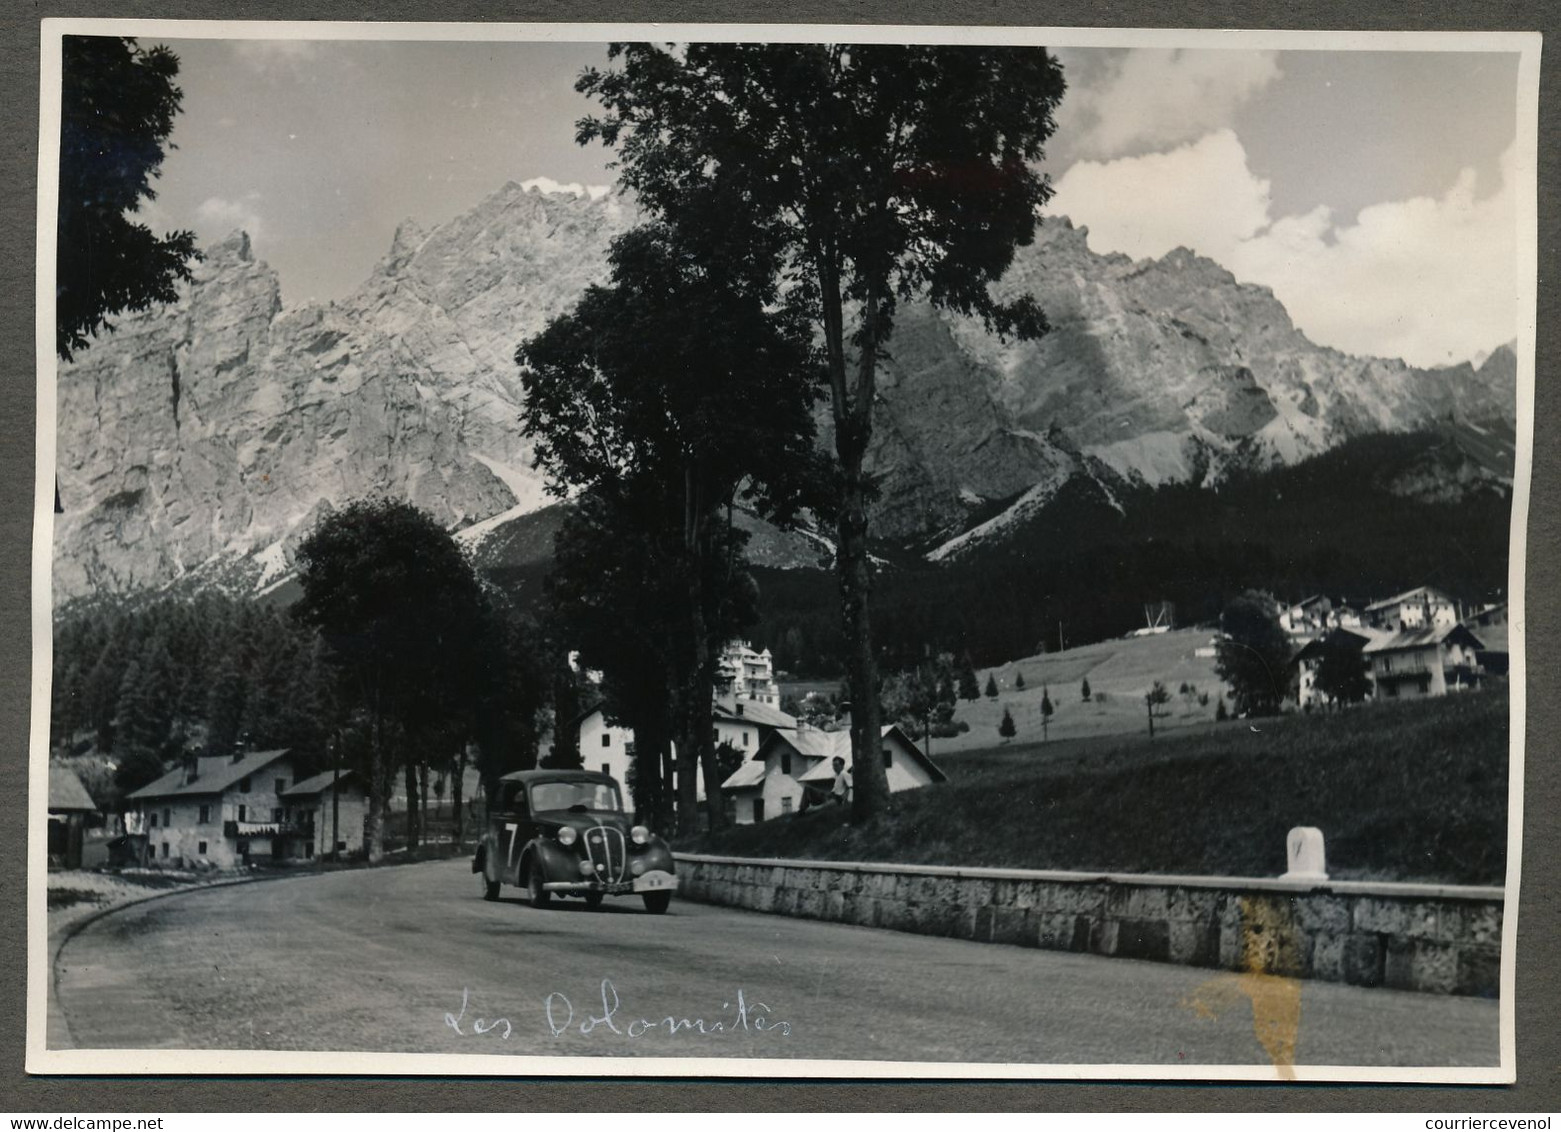 12eme Rallye Des Alpes 1949 - Equipe SEBAN DESCOMS - Dans Les Dolomites (3 Photos) - SIMCA 8 COUPÉ 1949 - Cars